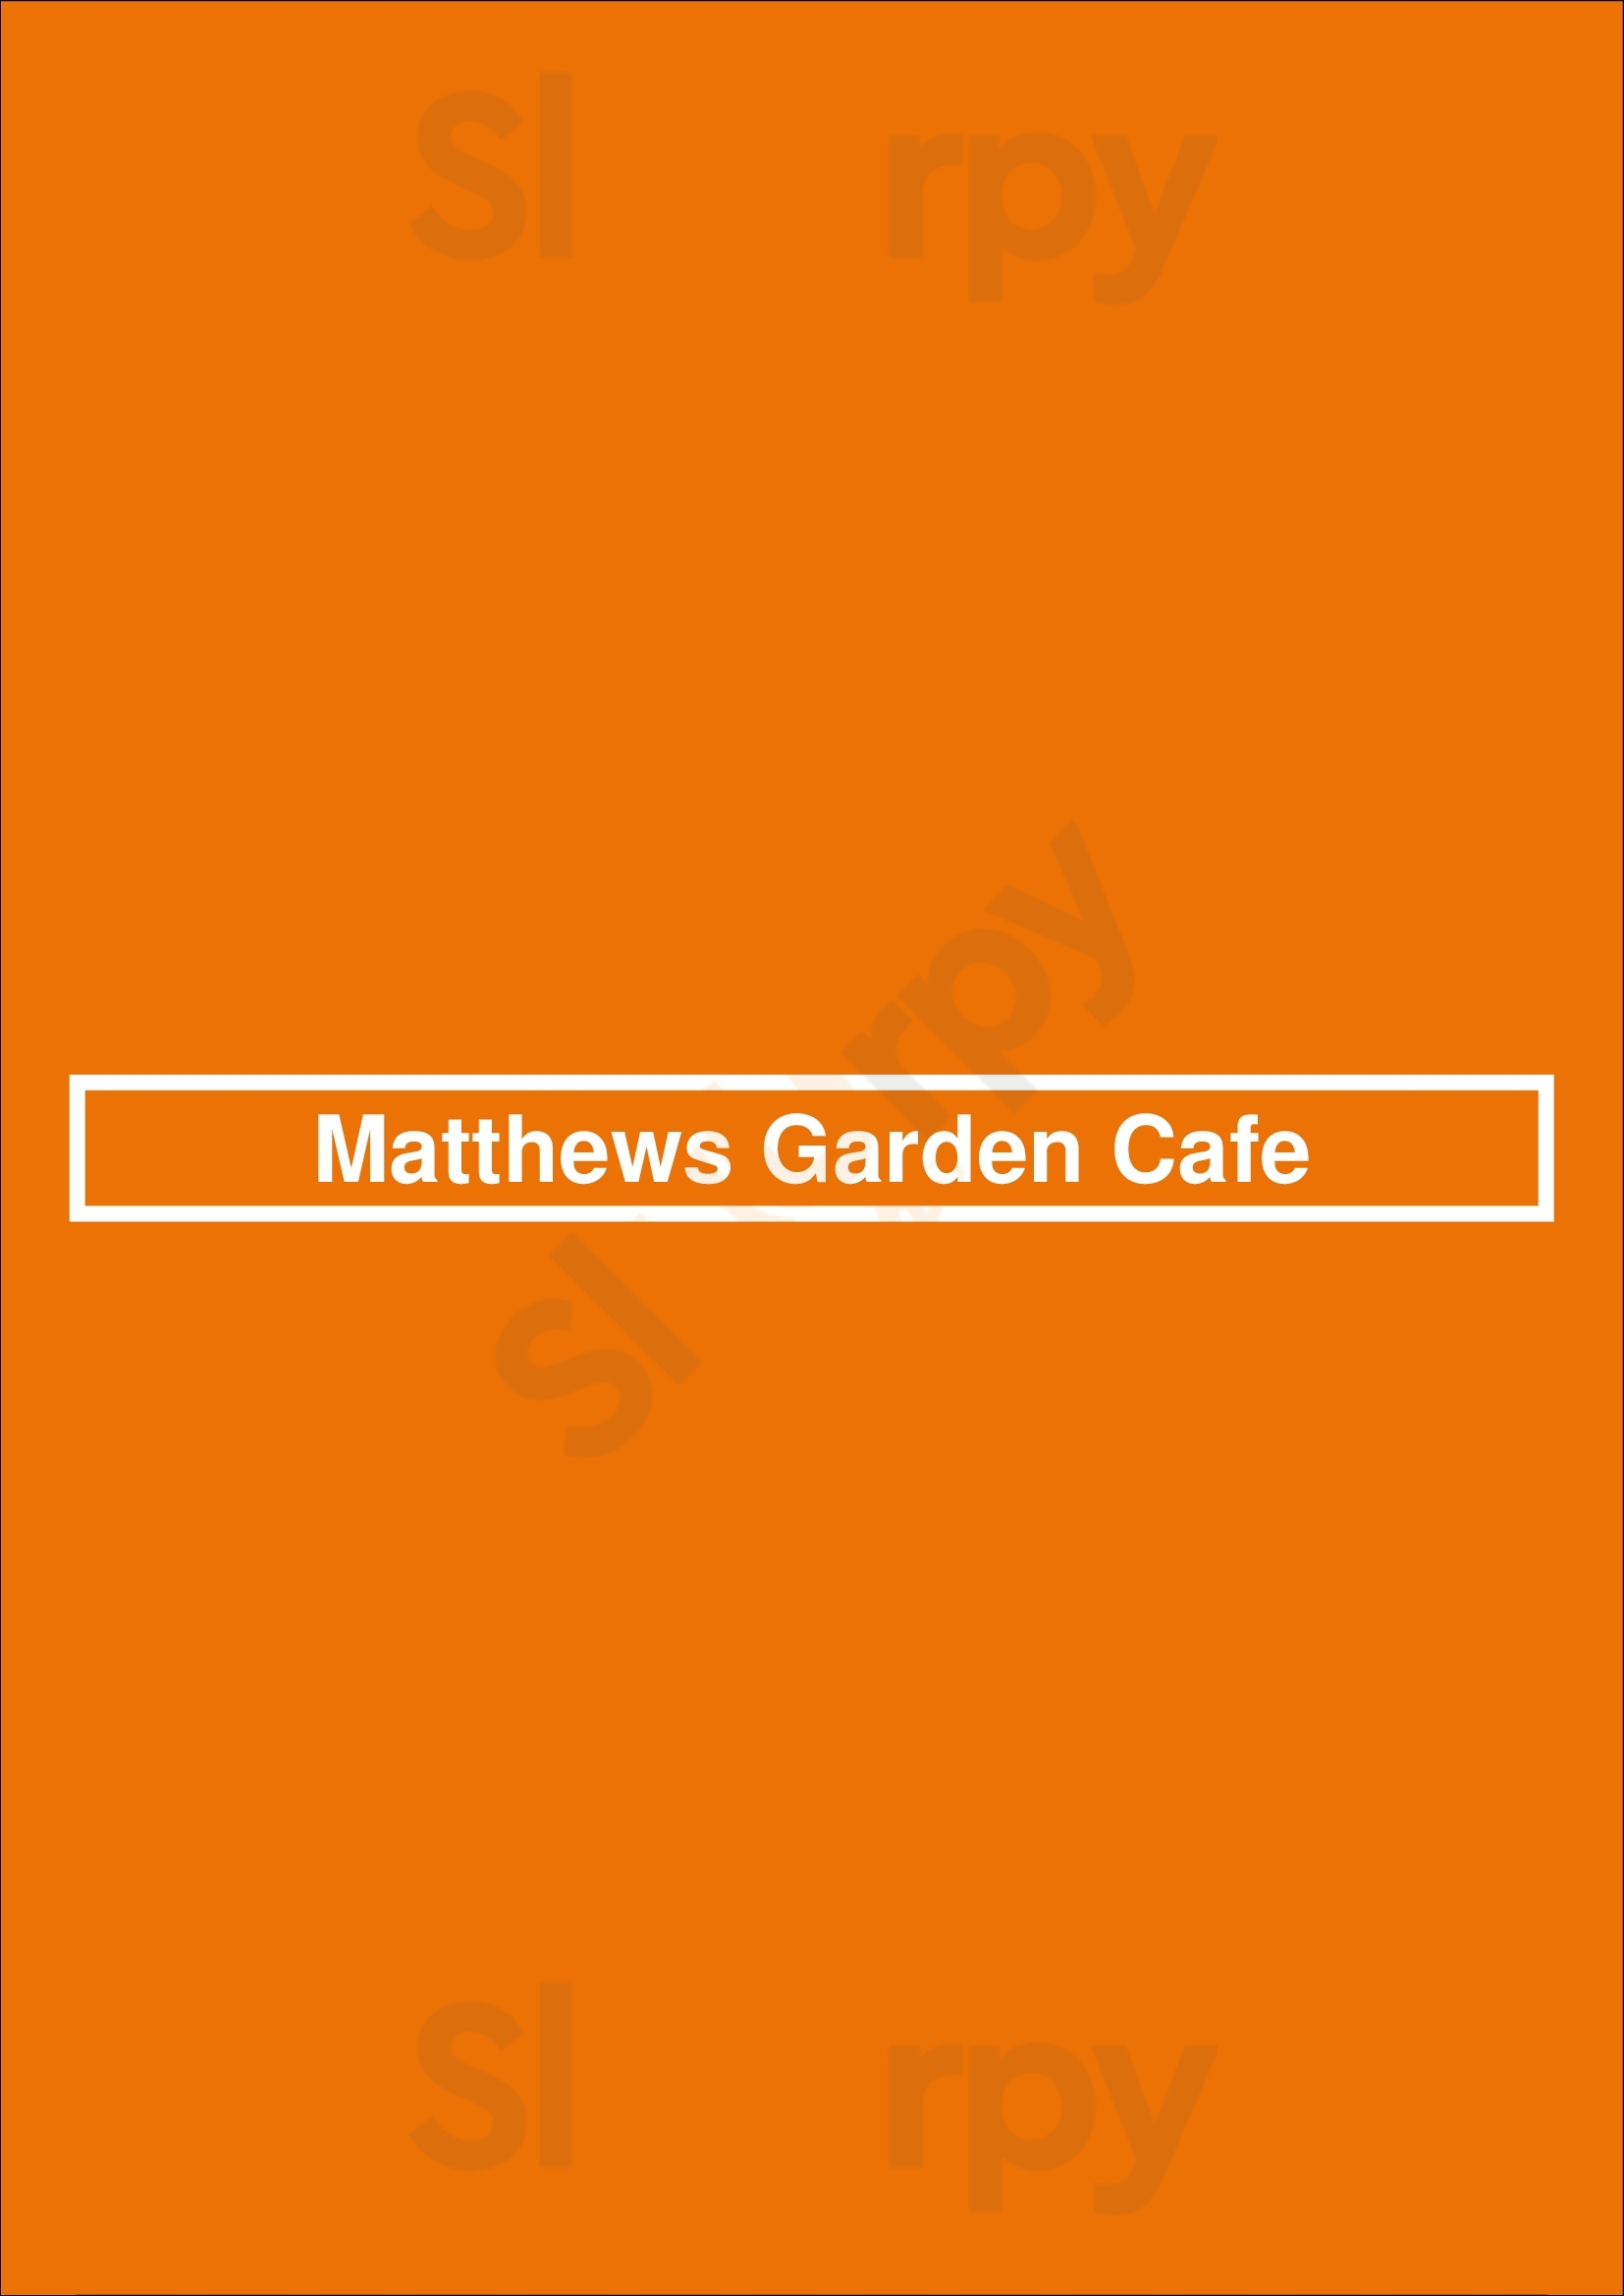 Matthews Garden Cafe Los Angeles Menu - 1